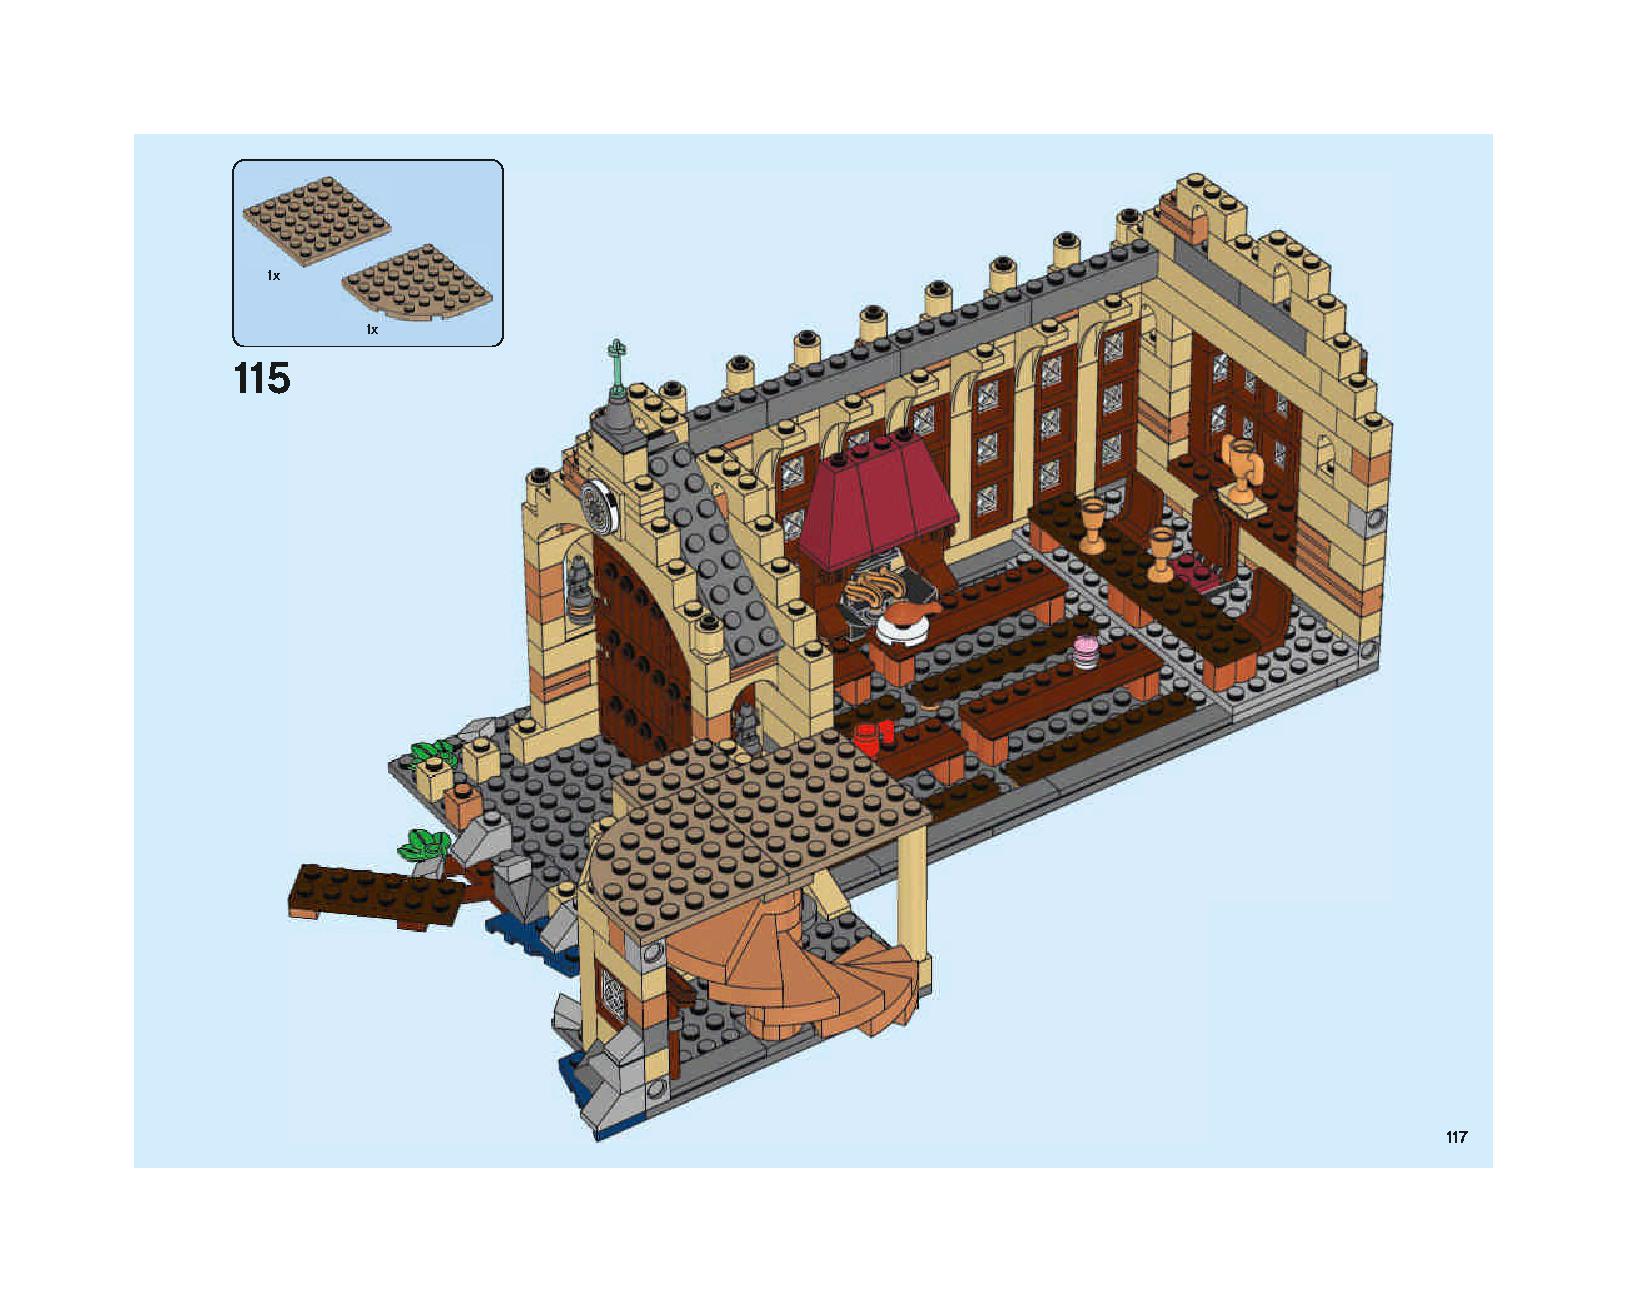 ホグワーツの大広間 75954 レゴの商品情報 レゴの説明書・組立方法 117 page